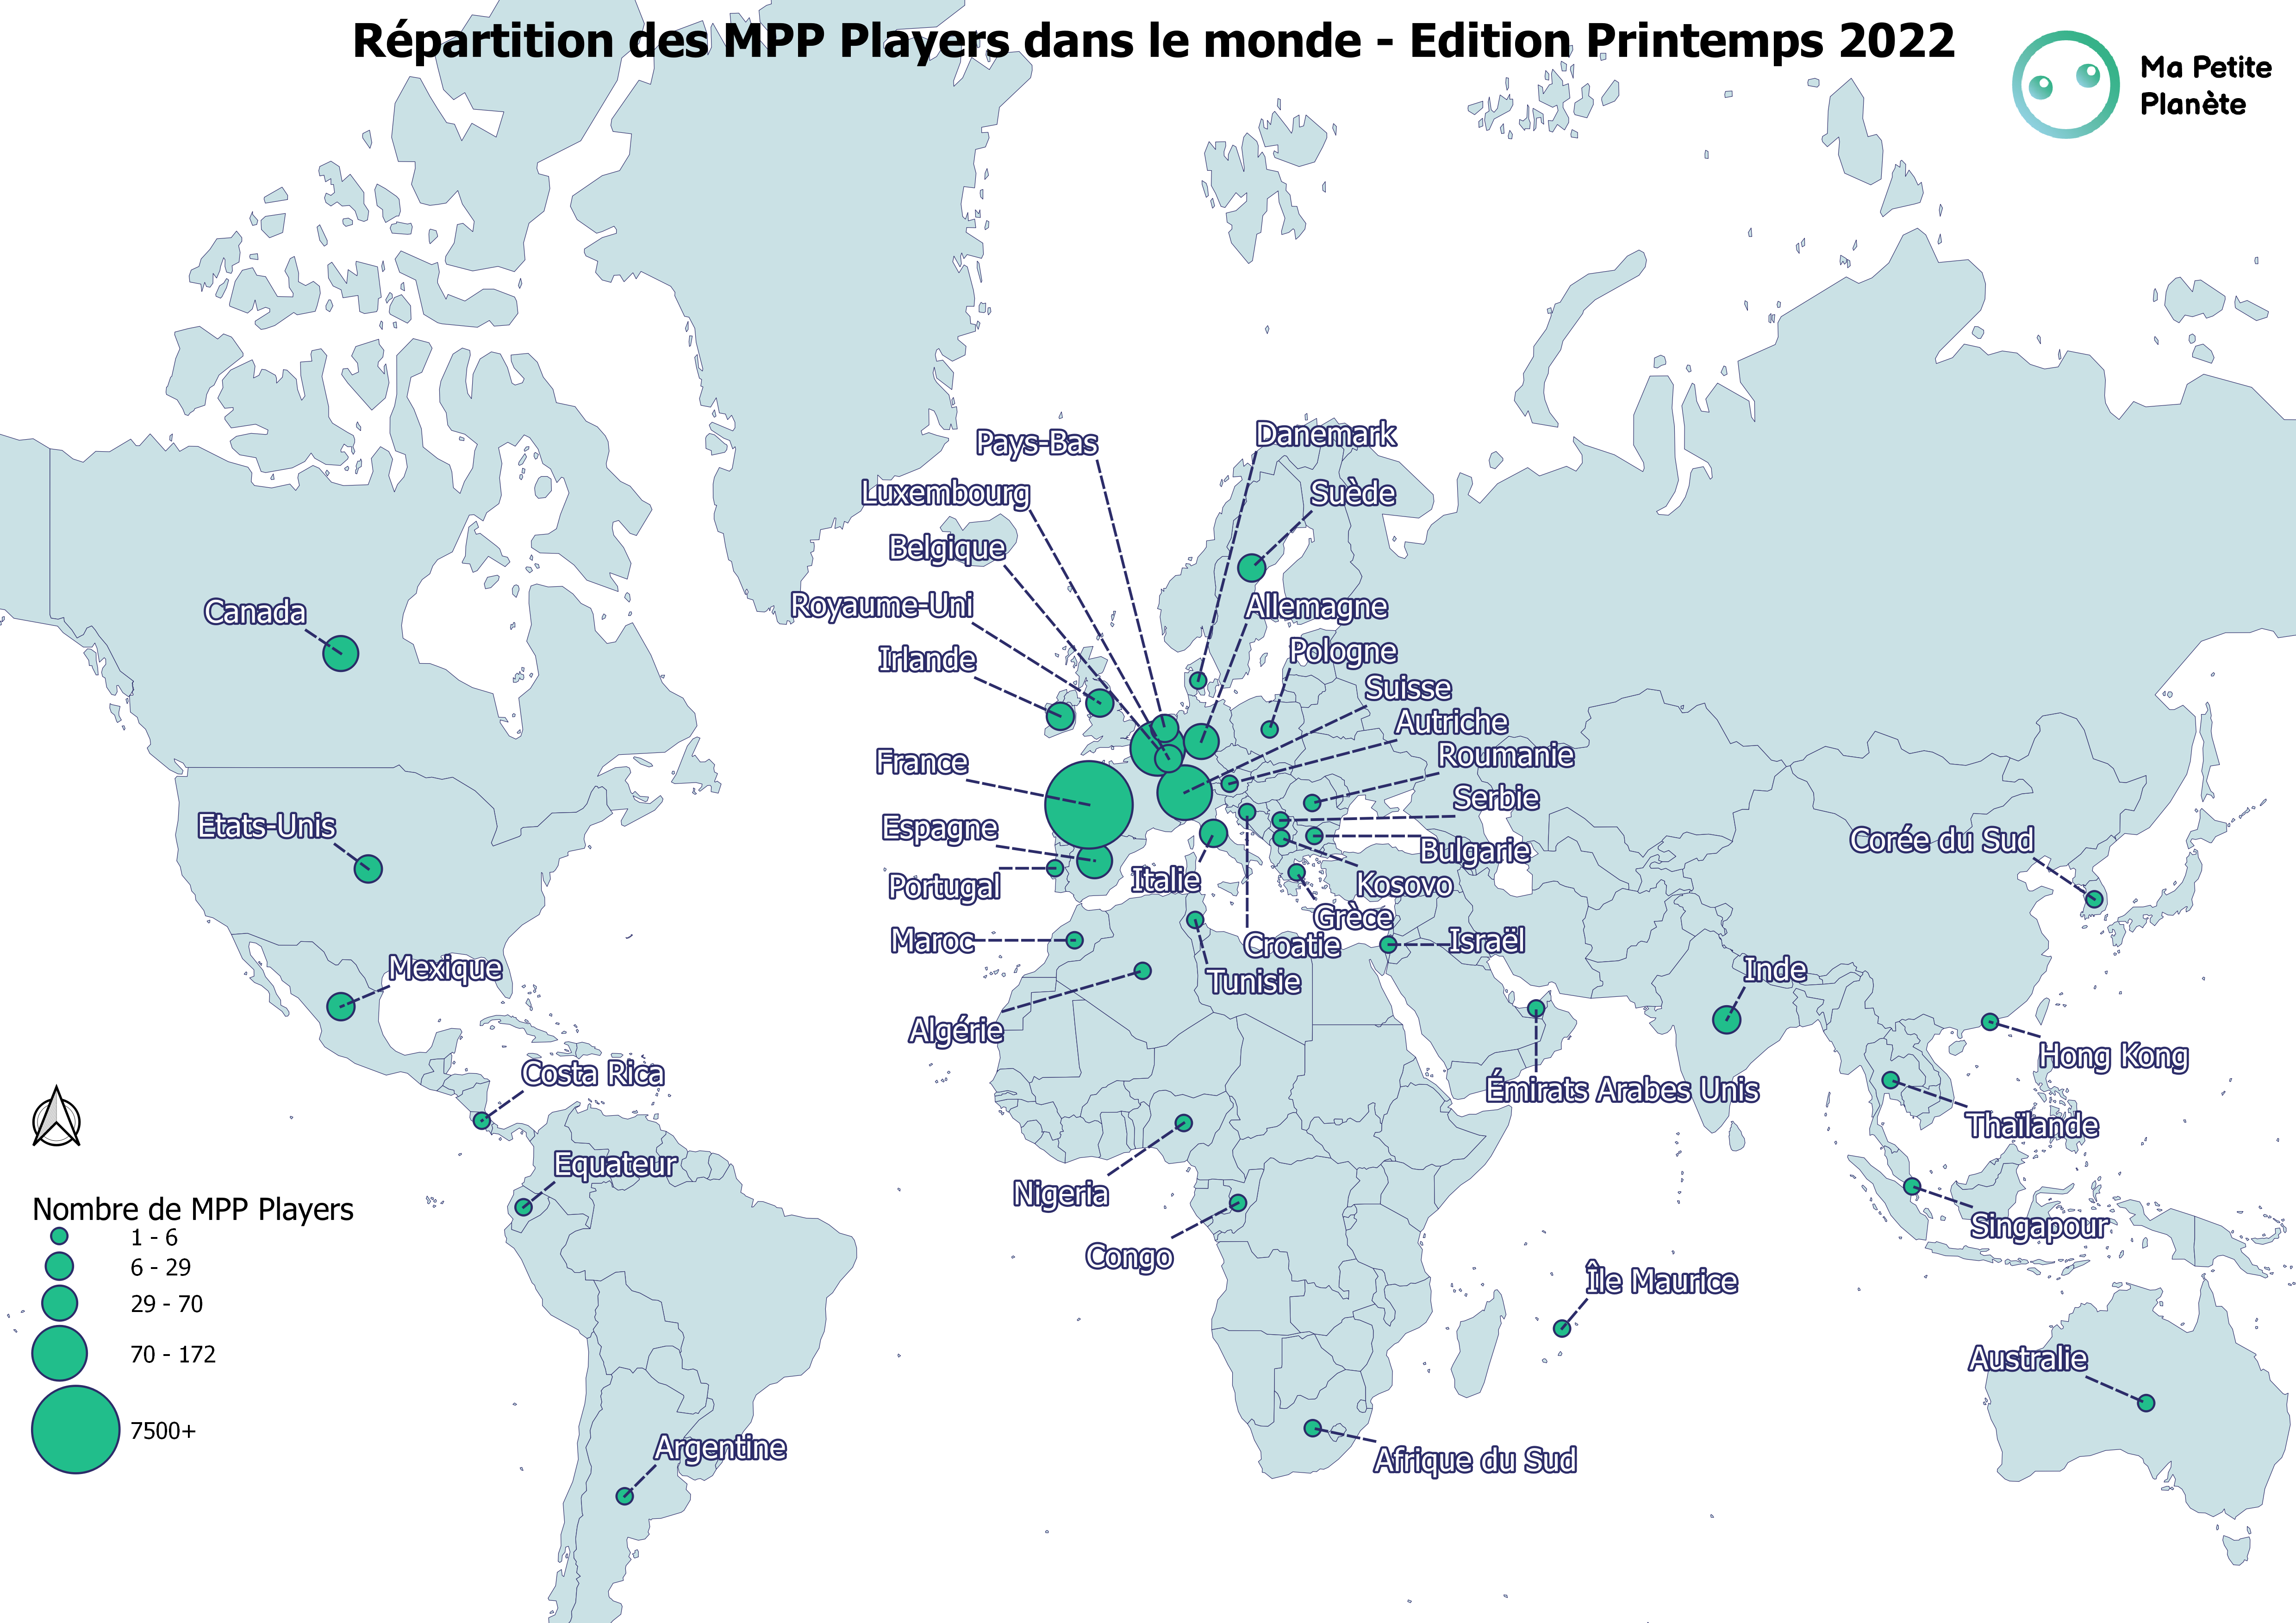 RÃ©partition des MPP Players dans le monde lors de l'Ã©dition du Printemps 2022